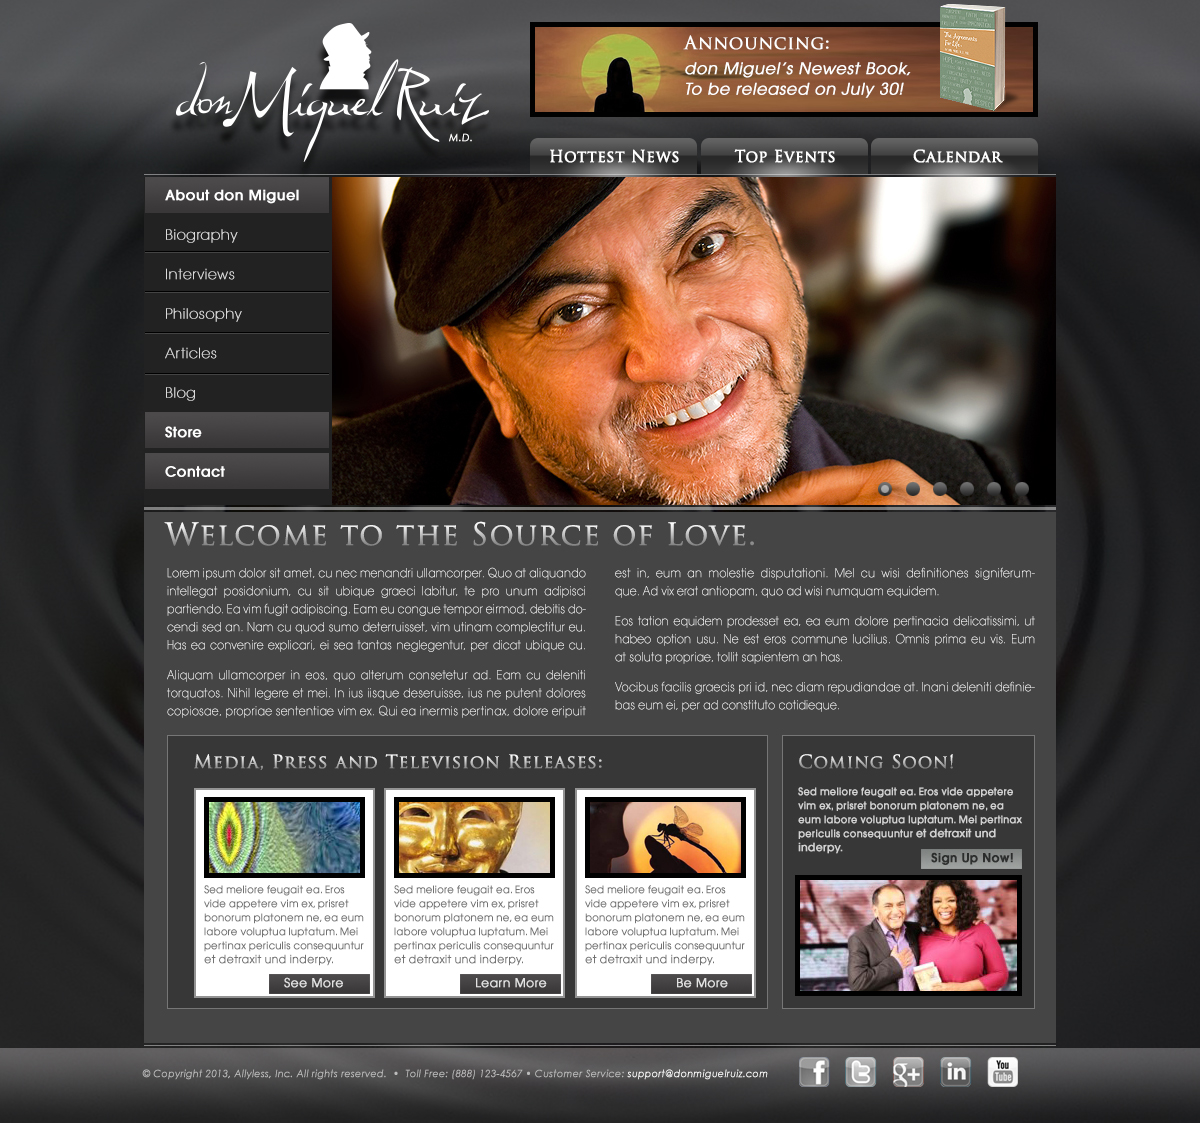 don Miguel Ruiz Web Site Design